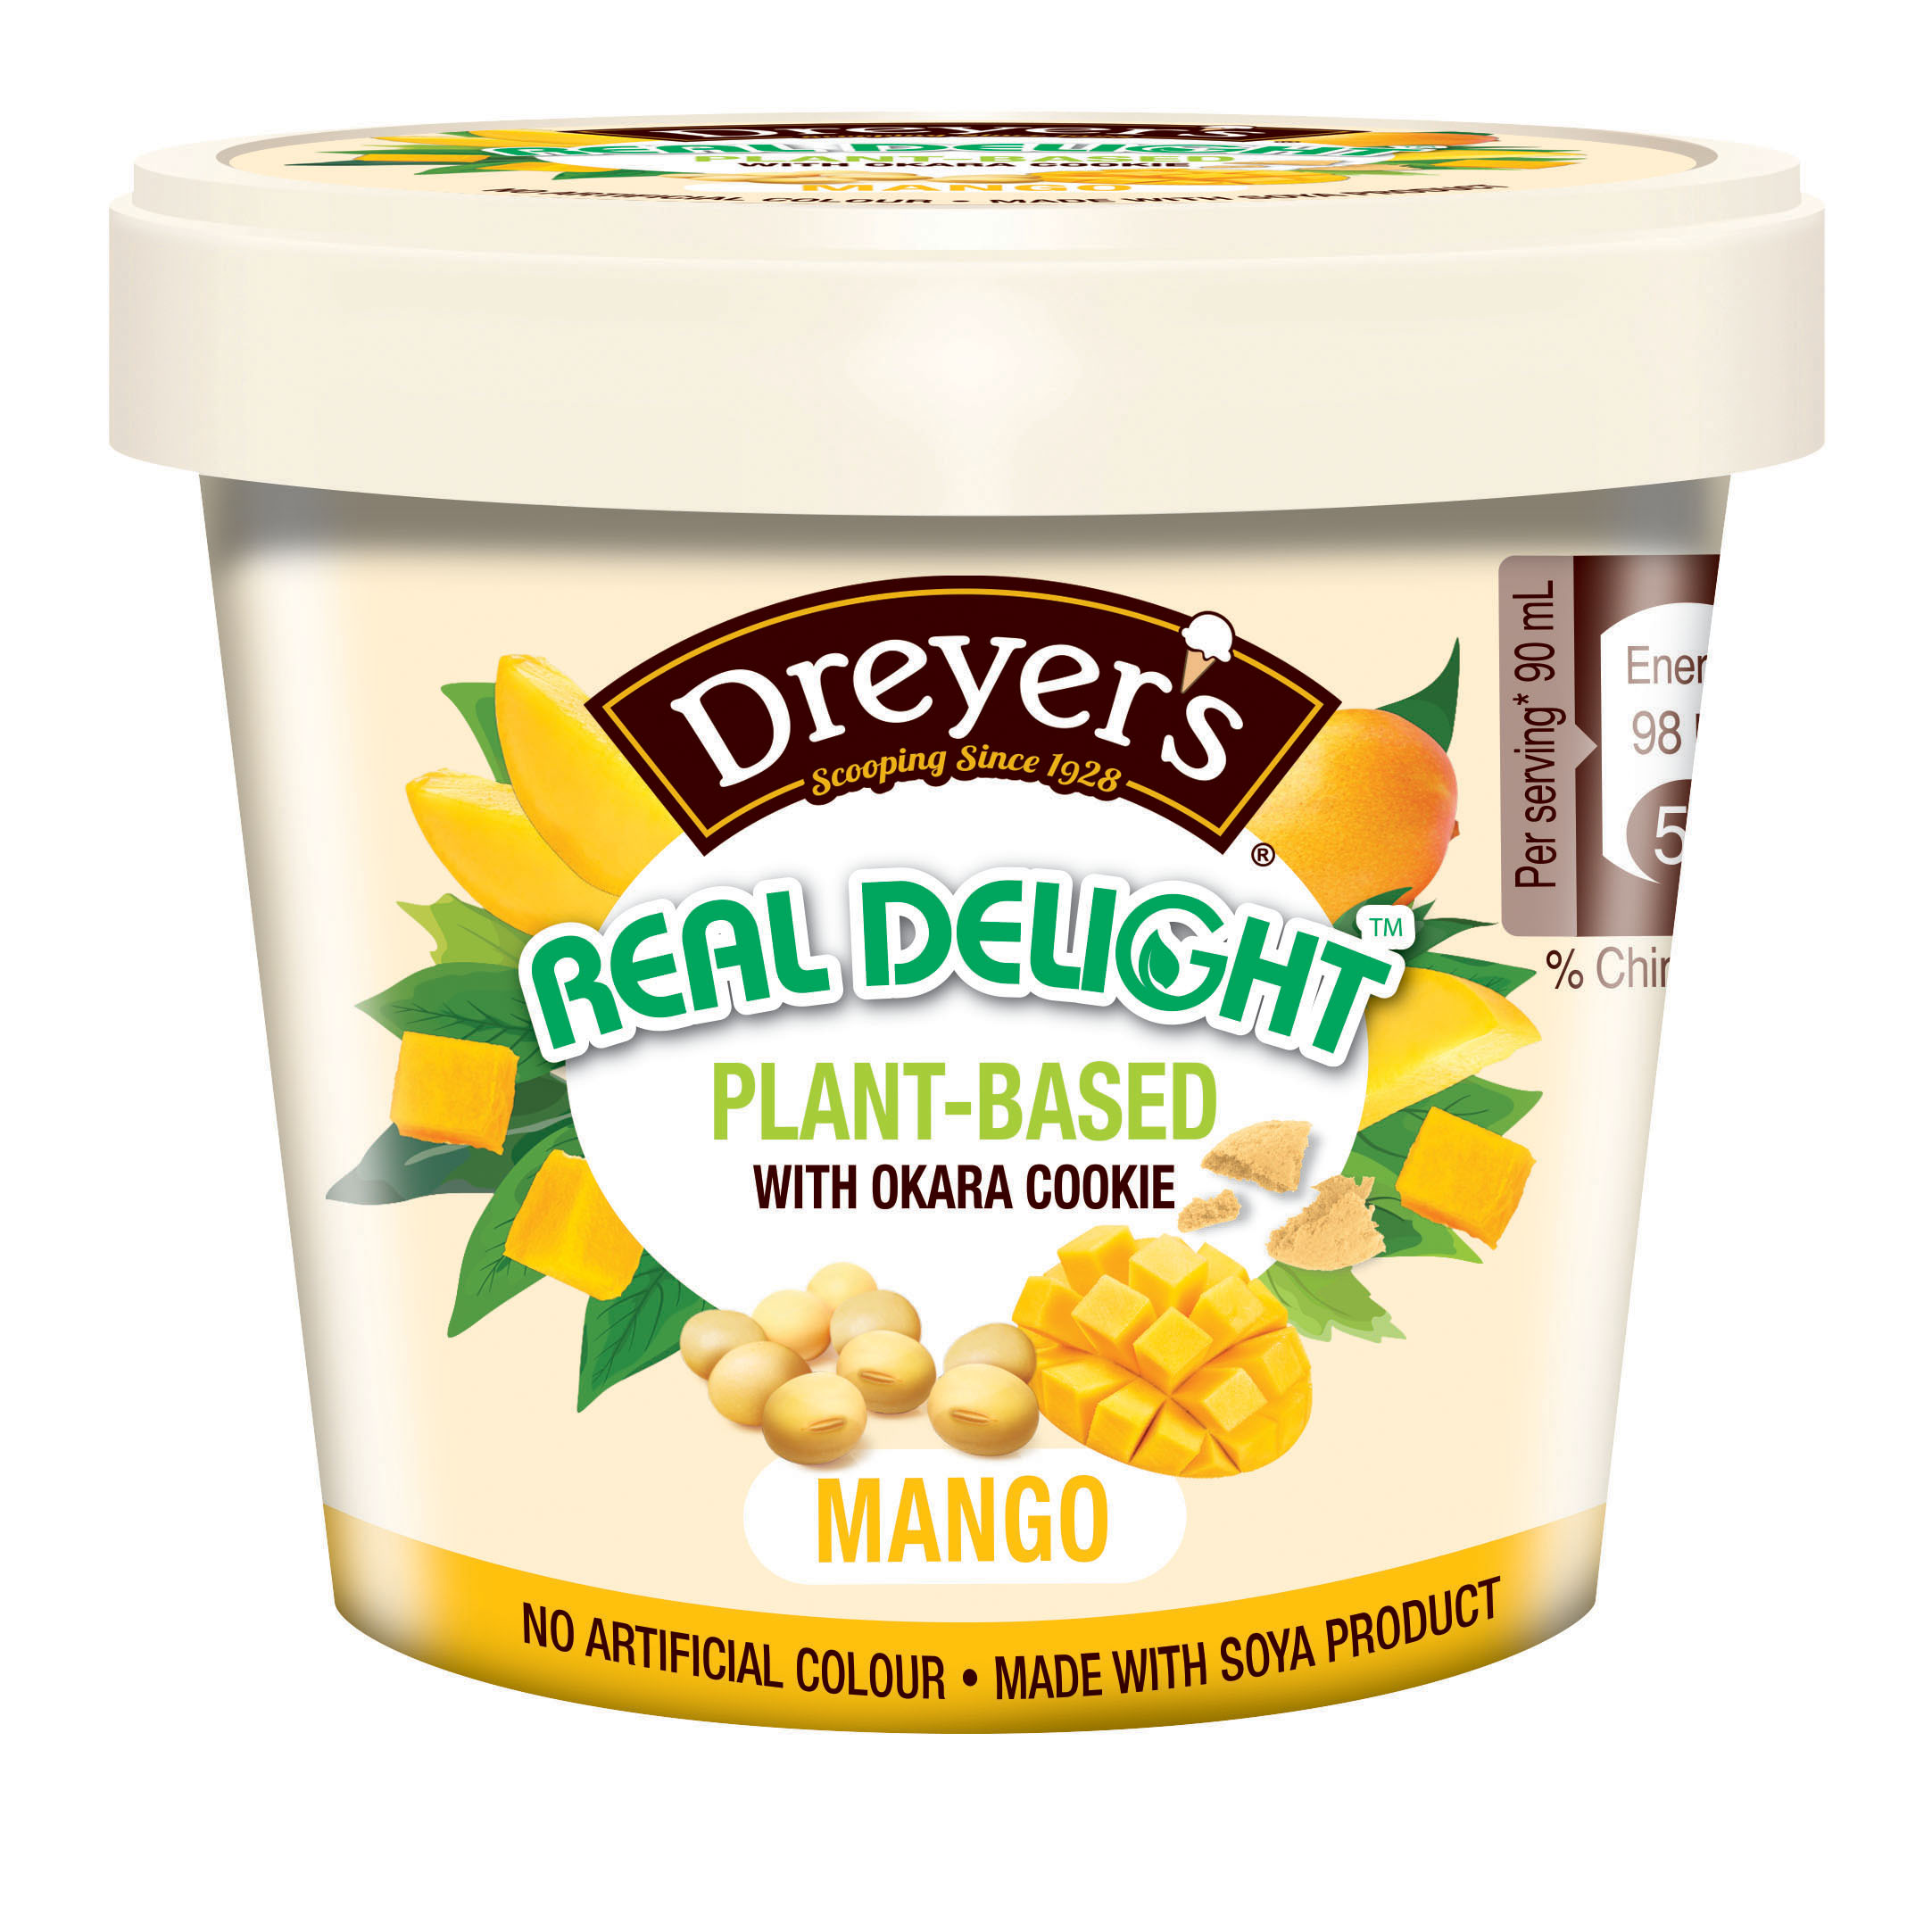 【本週FunTime之選】Dreyer's大豆製冰凍甜點  連同多款滋味冰凍甜點  7仔獨家發售